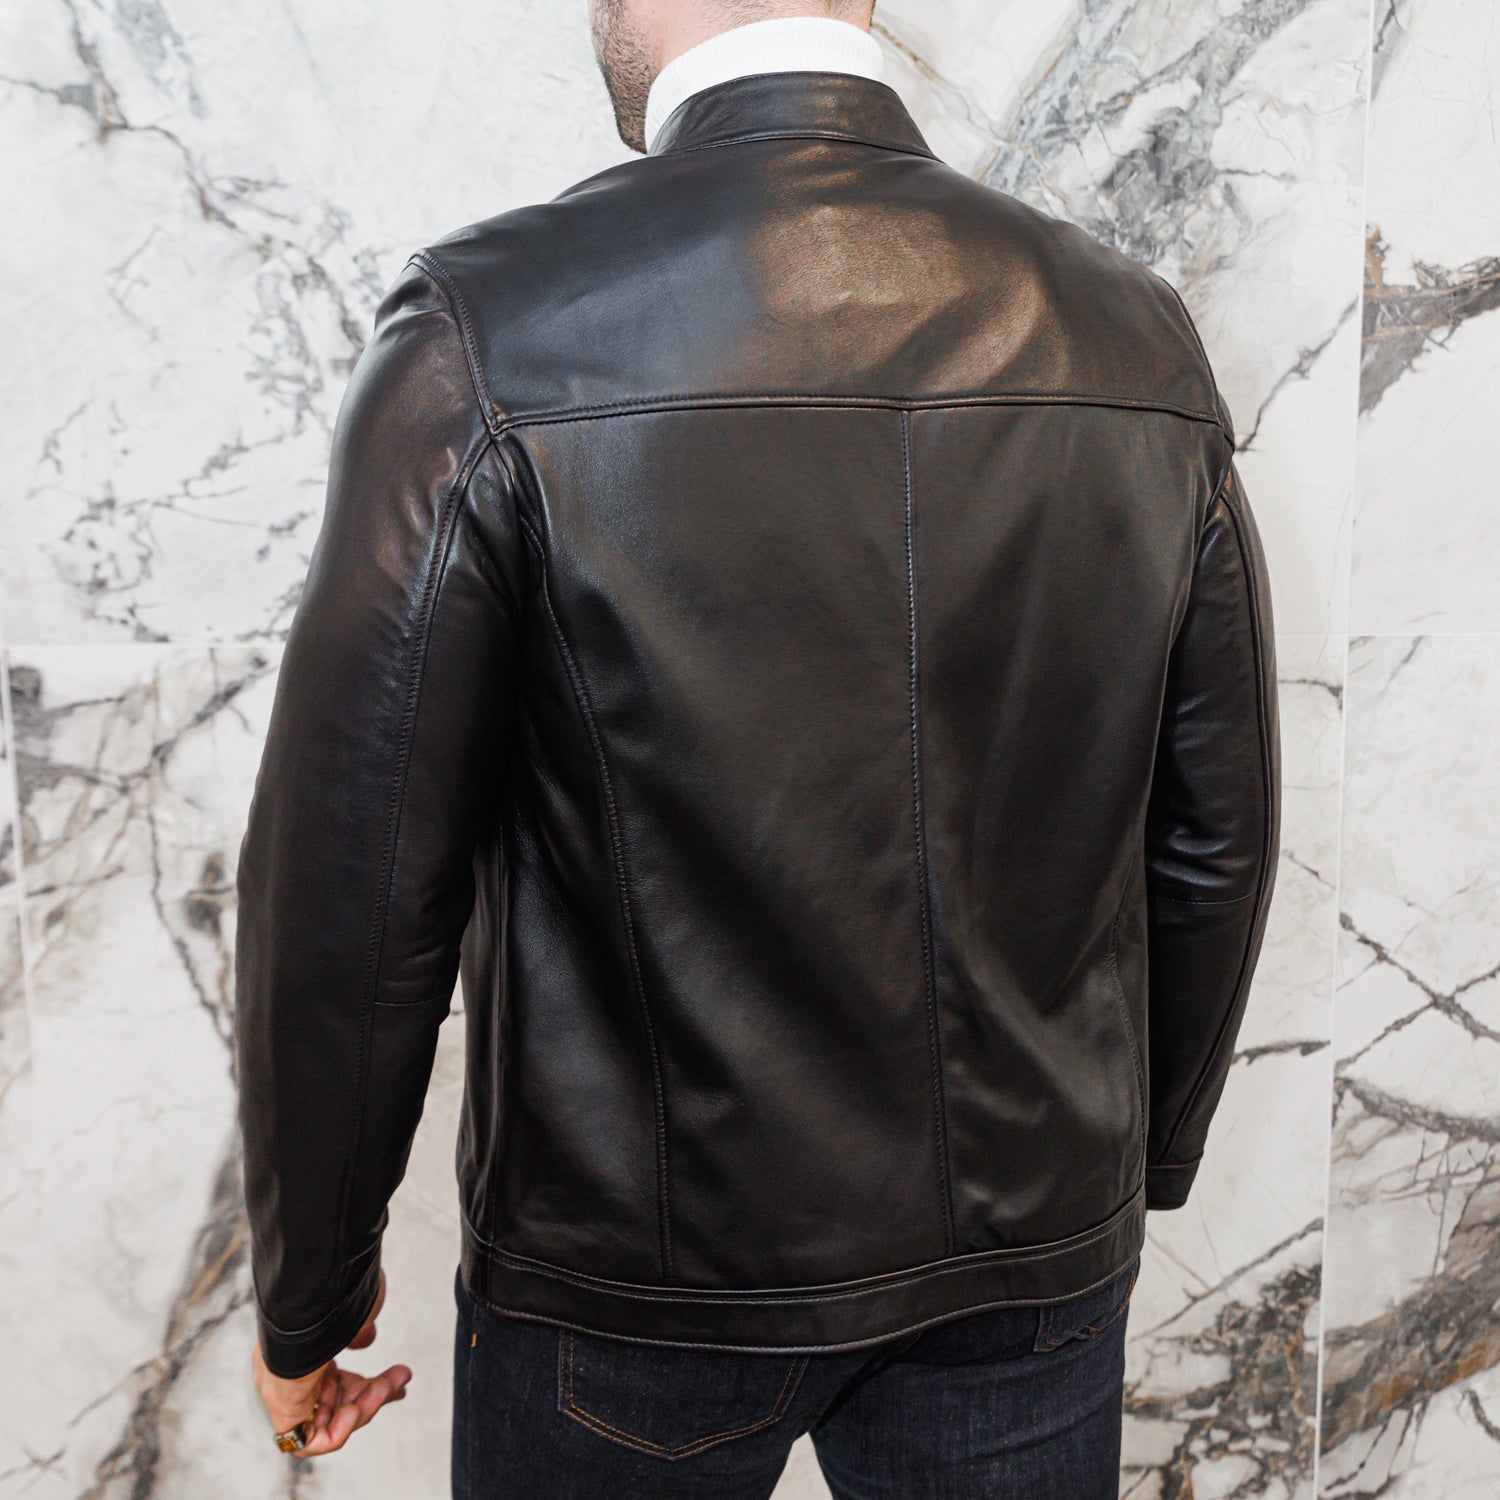 Lambskin Leather Biker Jacket - Black - Leather Jacket by Urbbana